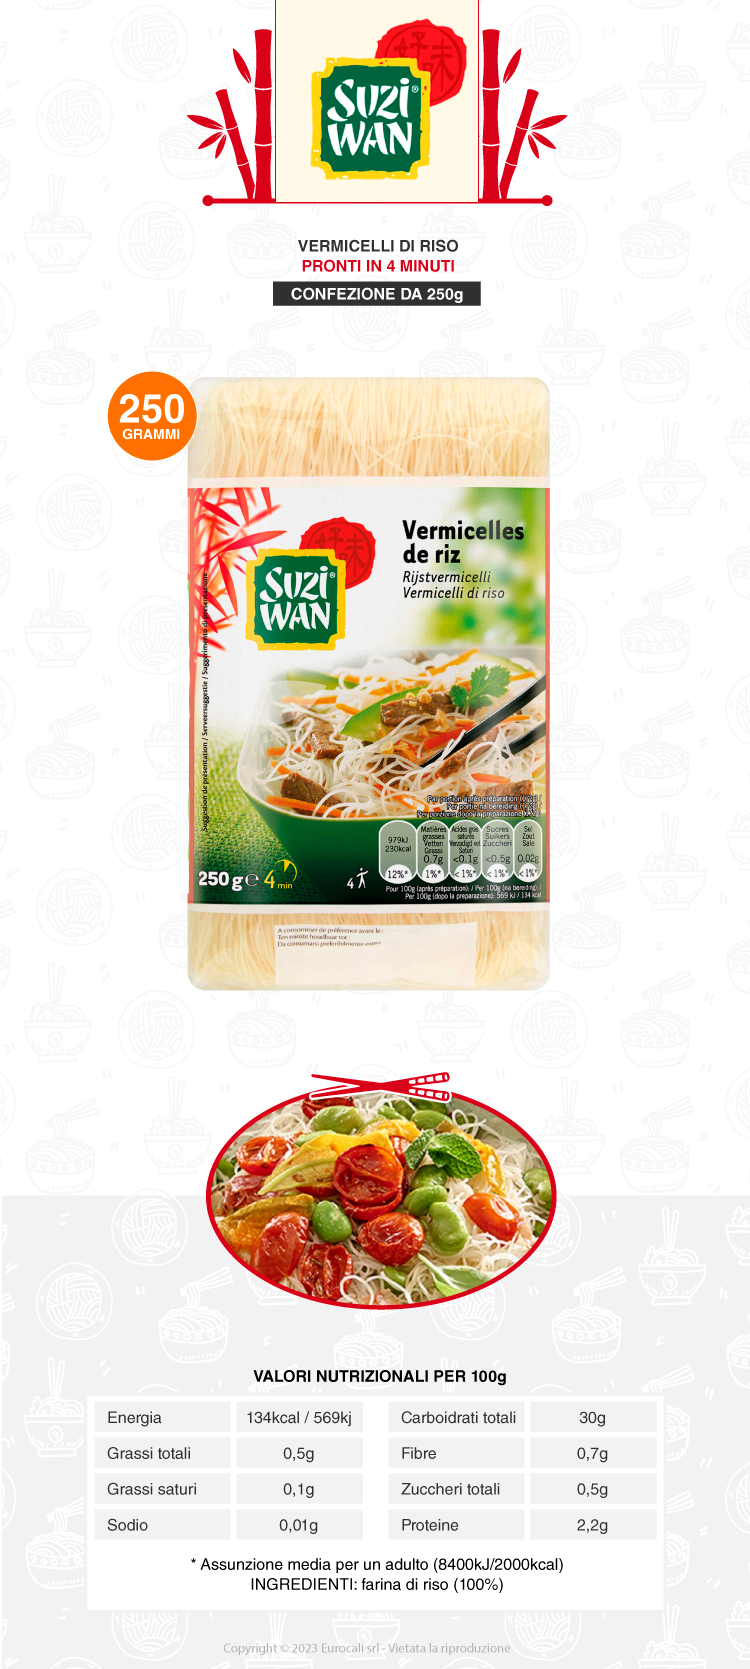 suzi wan - vermicelli di riso